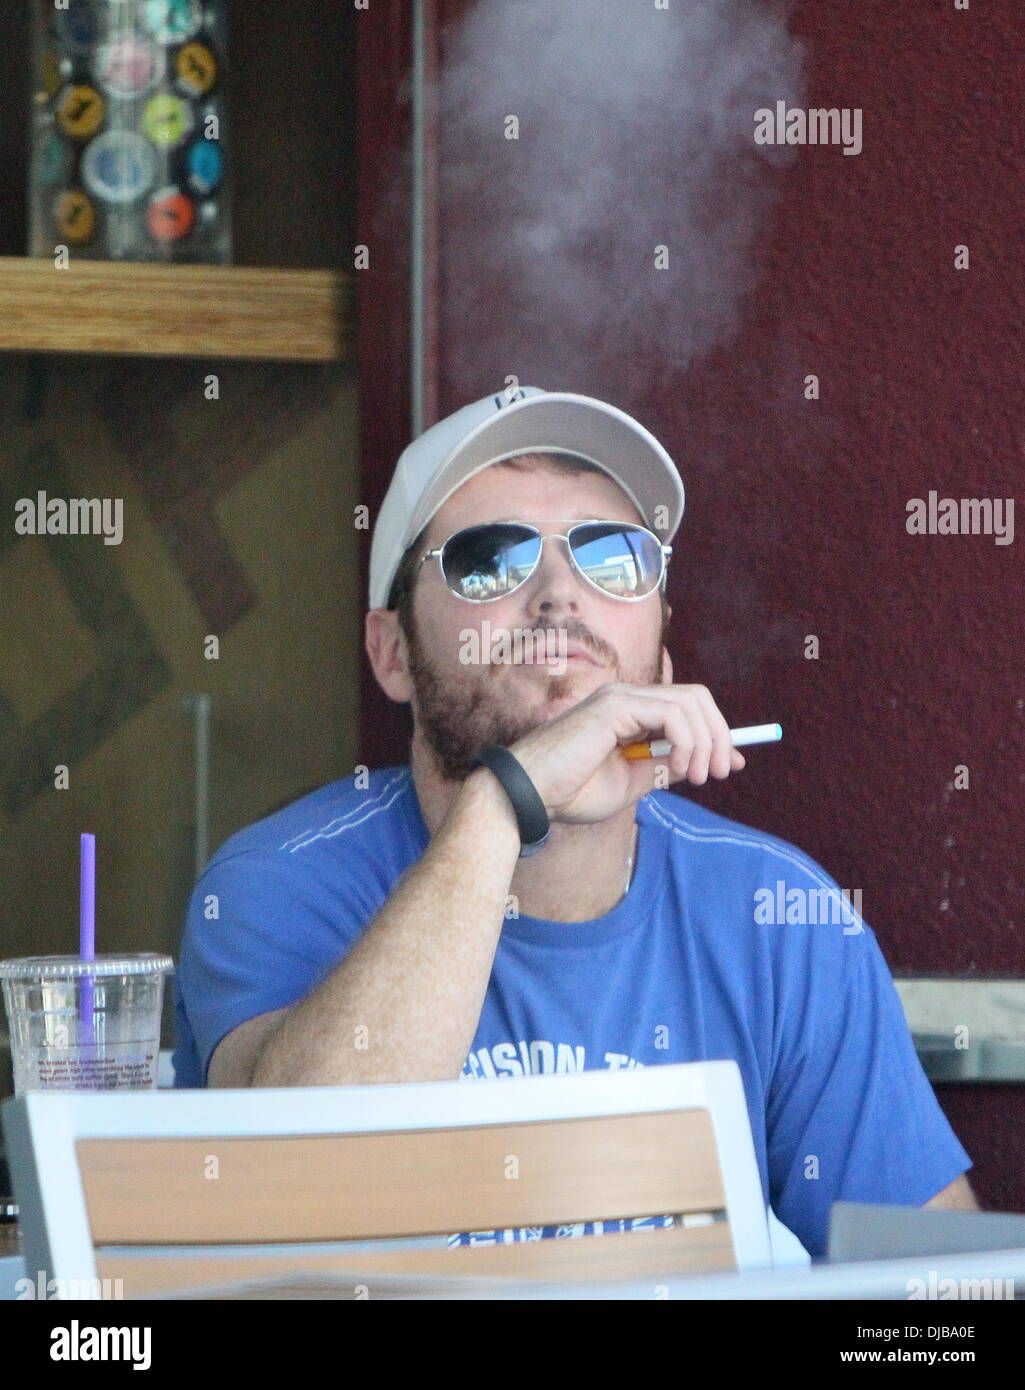 Kevin Connolly raucht einer Zigarette (oder Cannabis)
